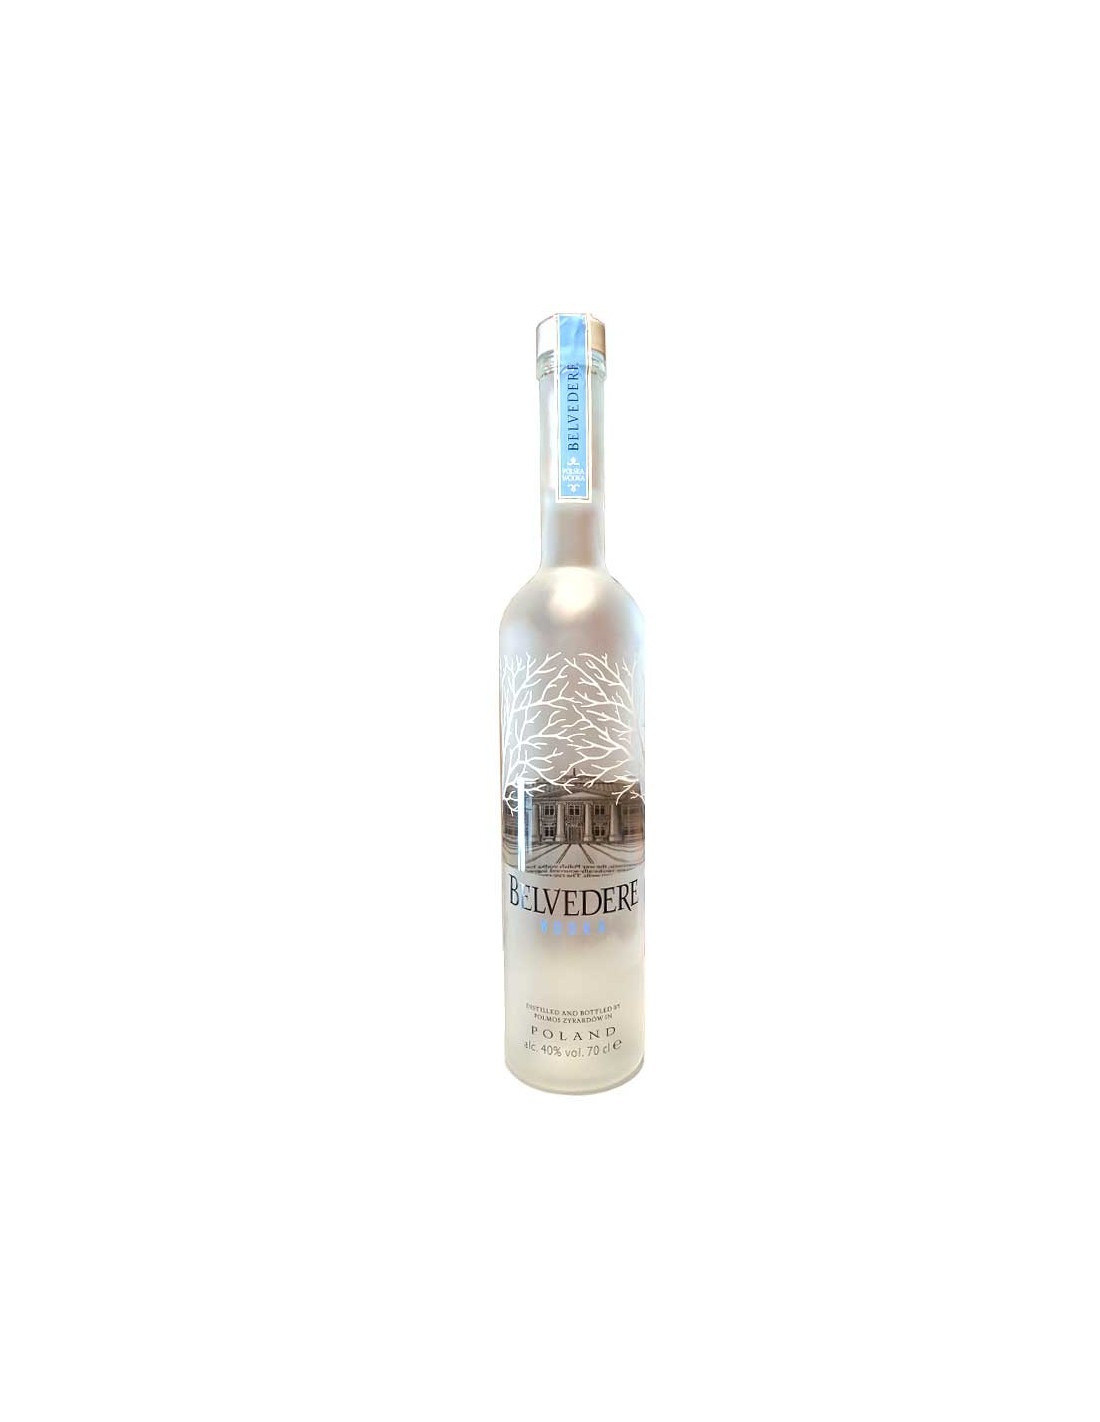 Vodka - Belvedere - Vodka Polonaise - 70cl - 40% | caviste Perpignan La  part des Anges